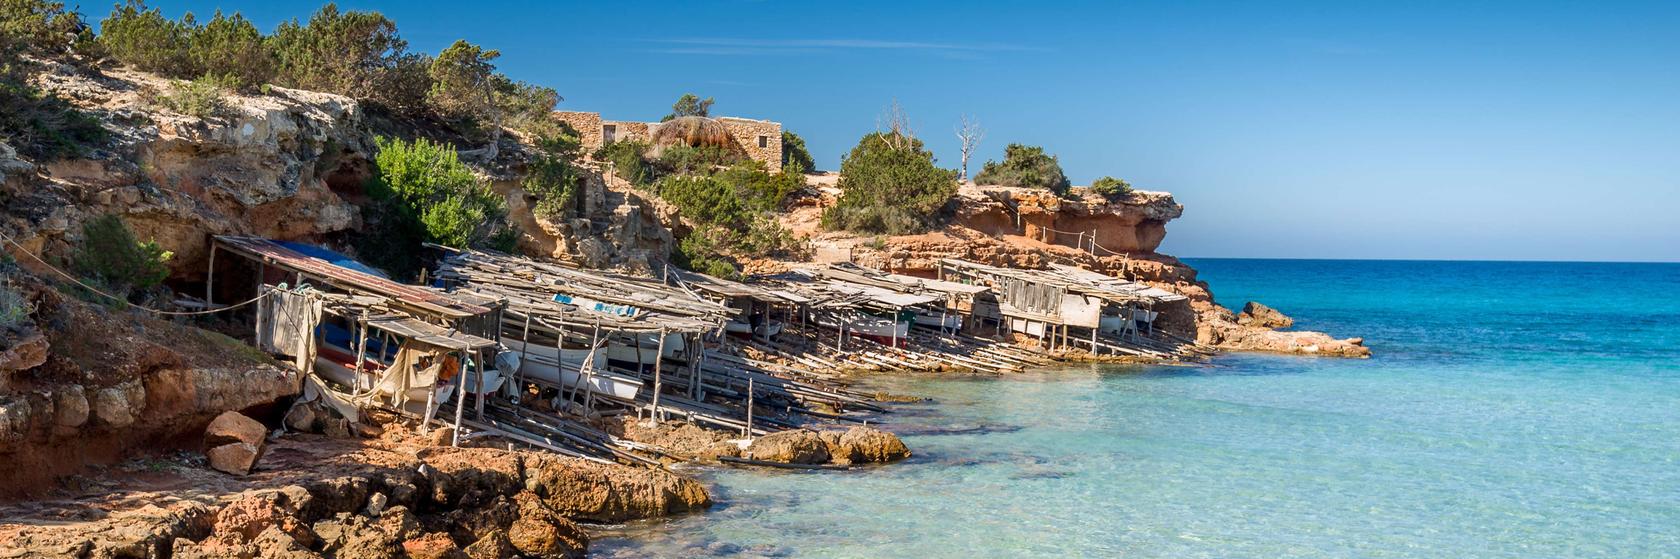 Kde výhodně nakoupit na Formenteře